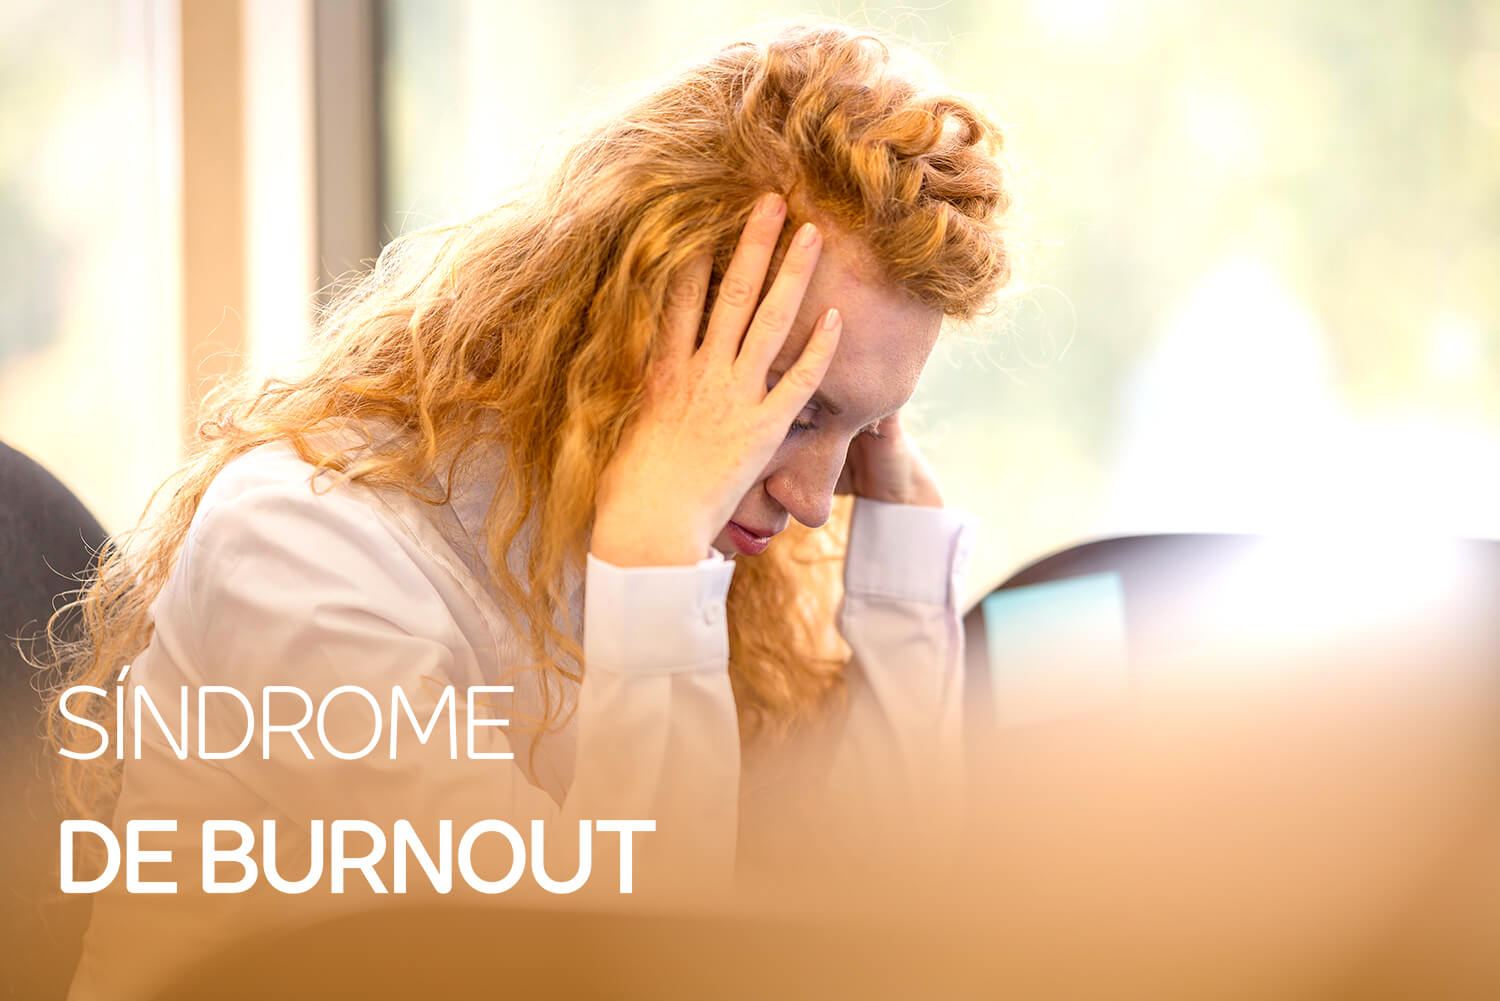 Síndrome de Burnout: O que é? Quais são as Causas e sintomas?